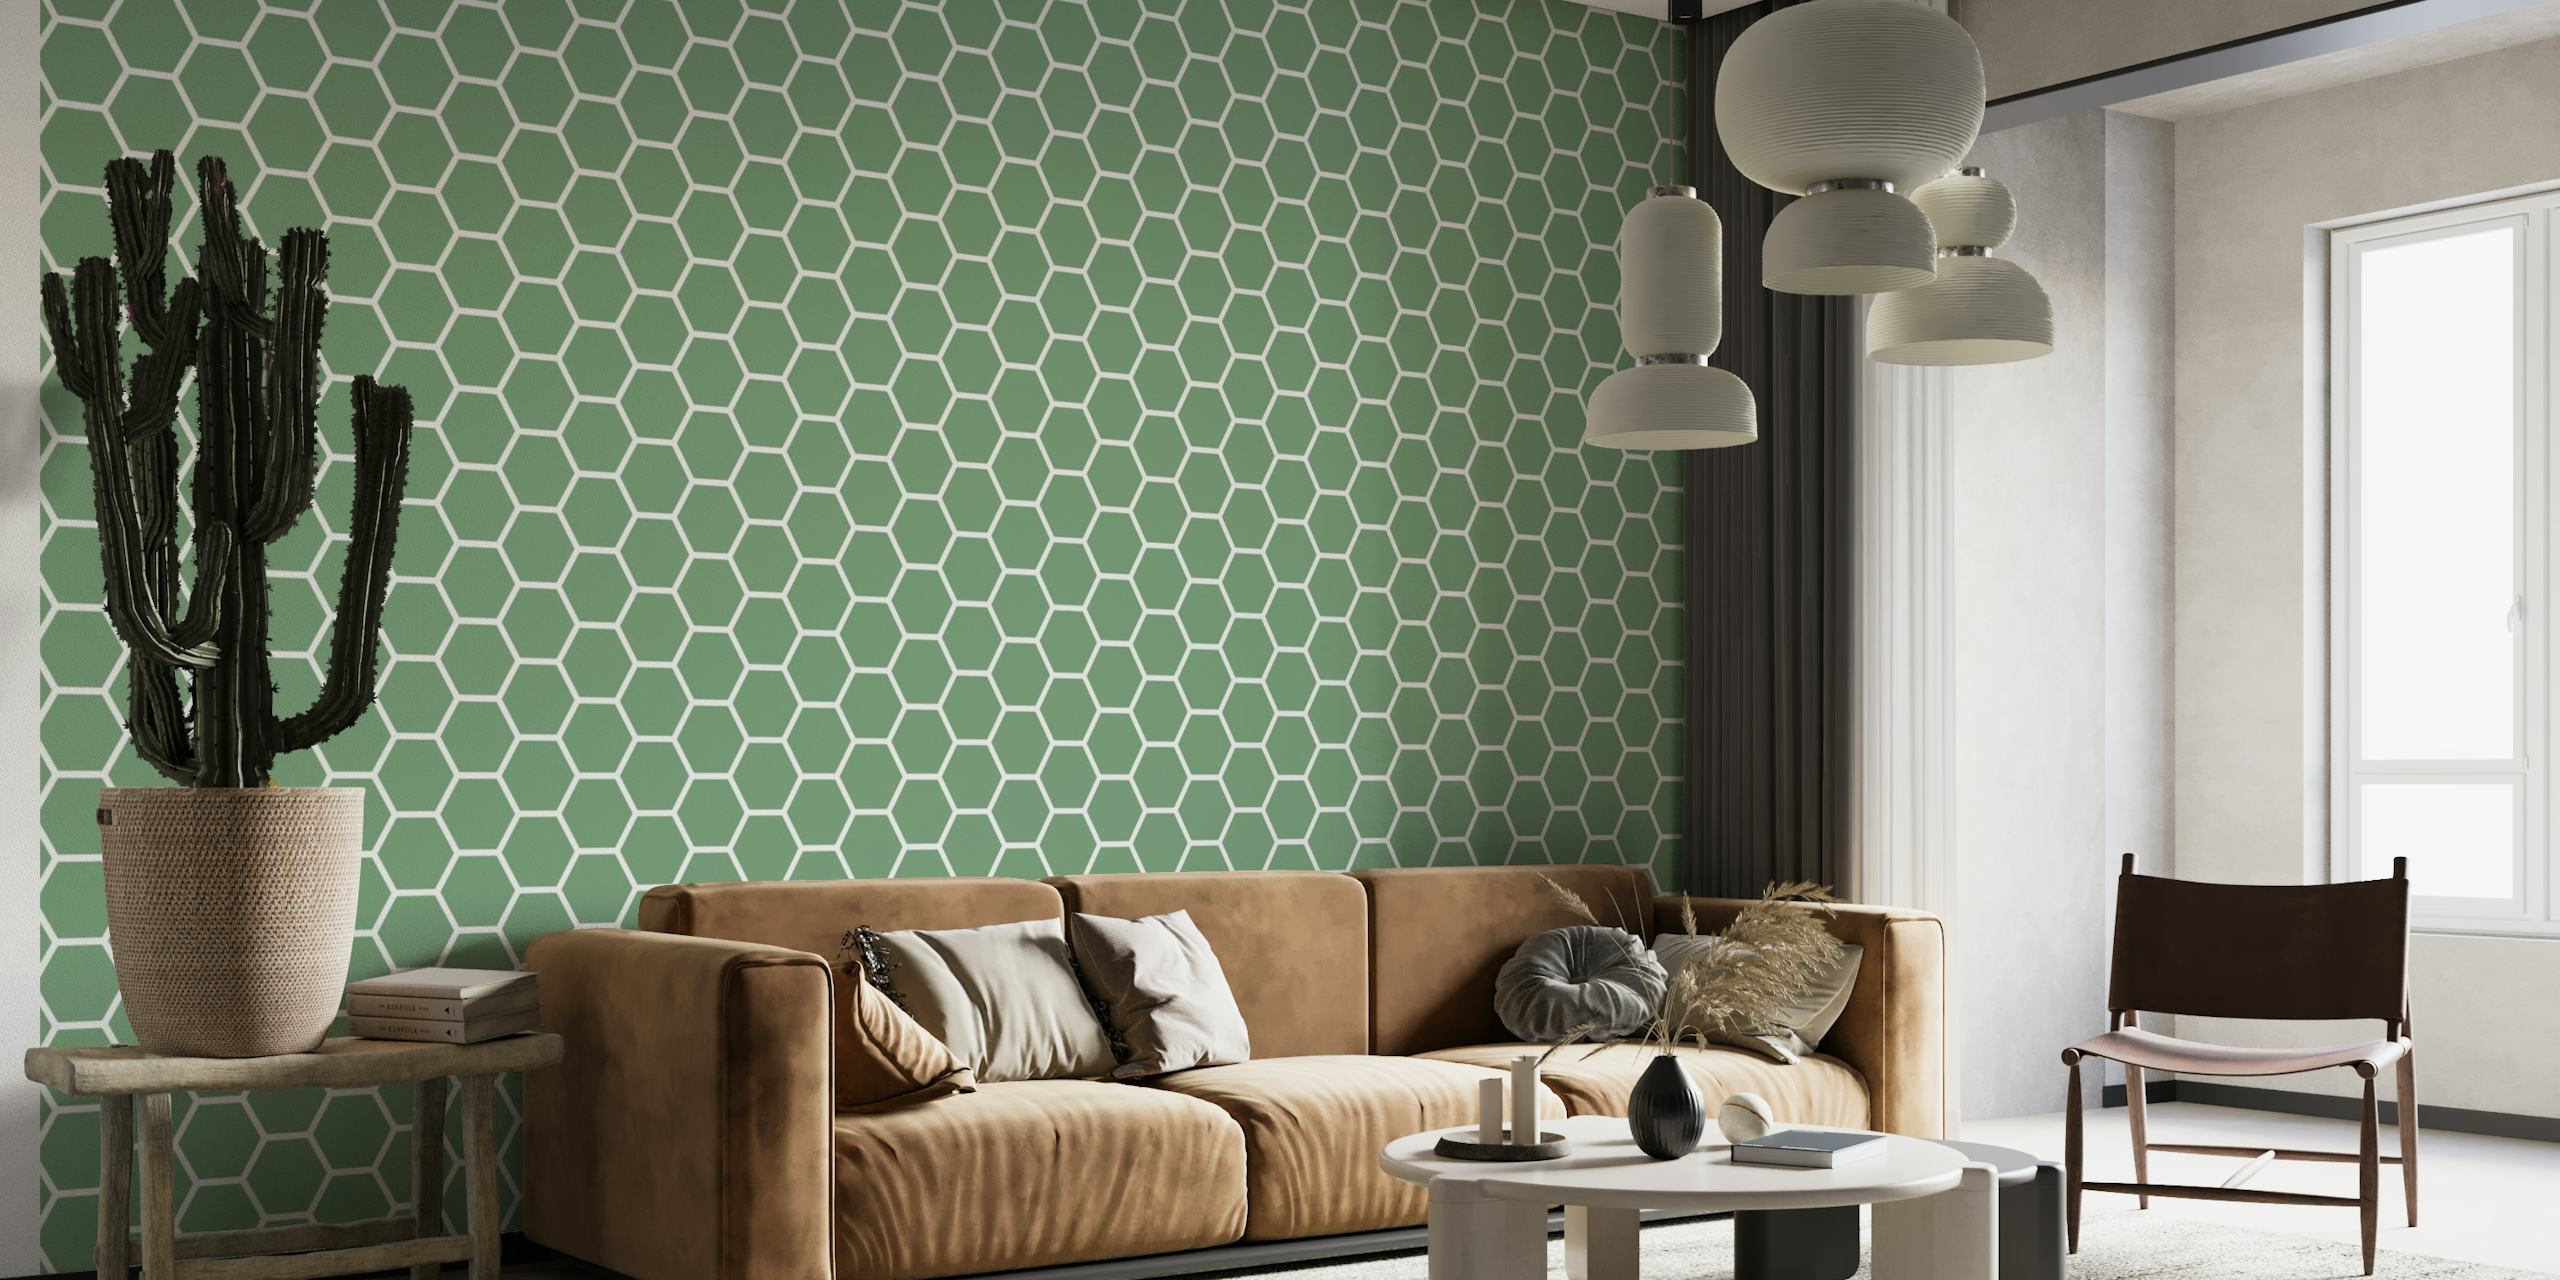 Green Hexagon Pattern behang